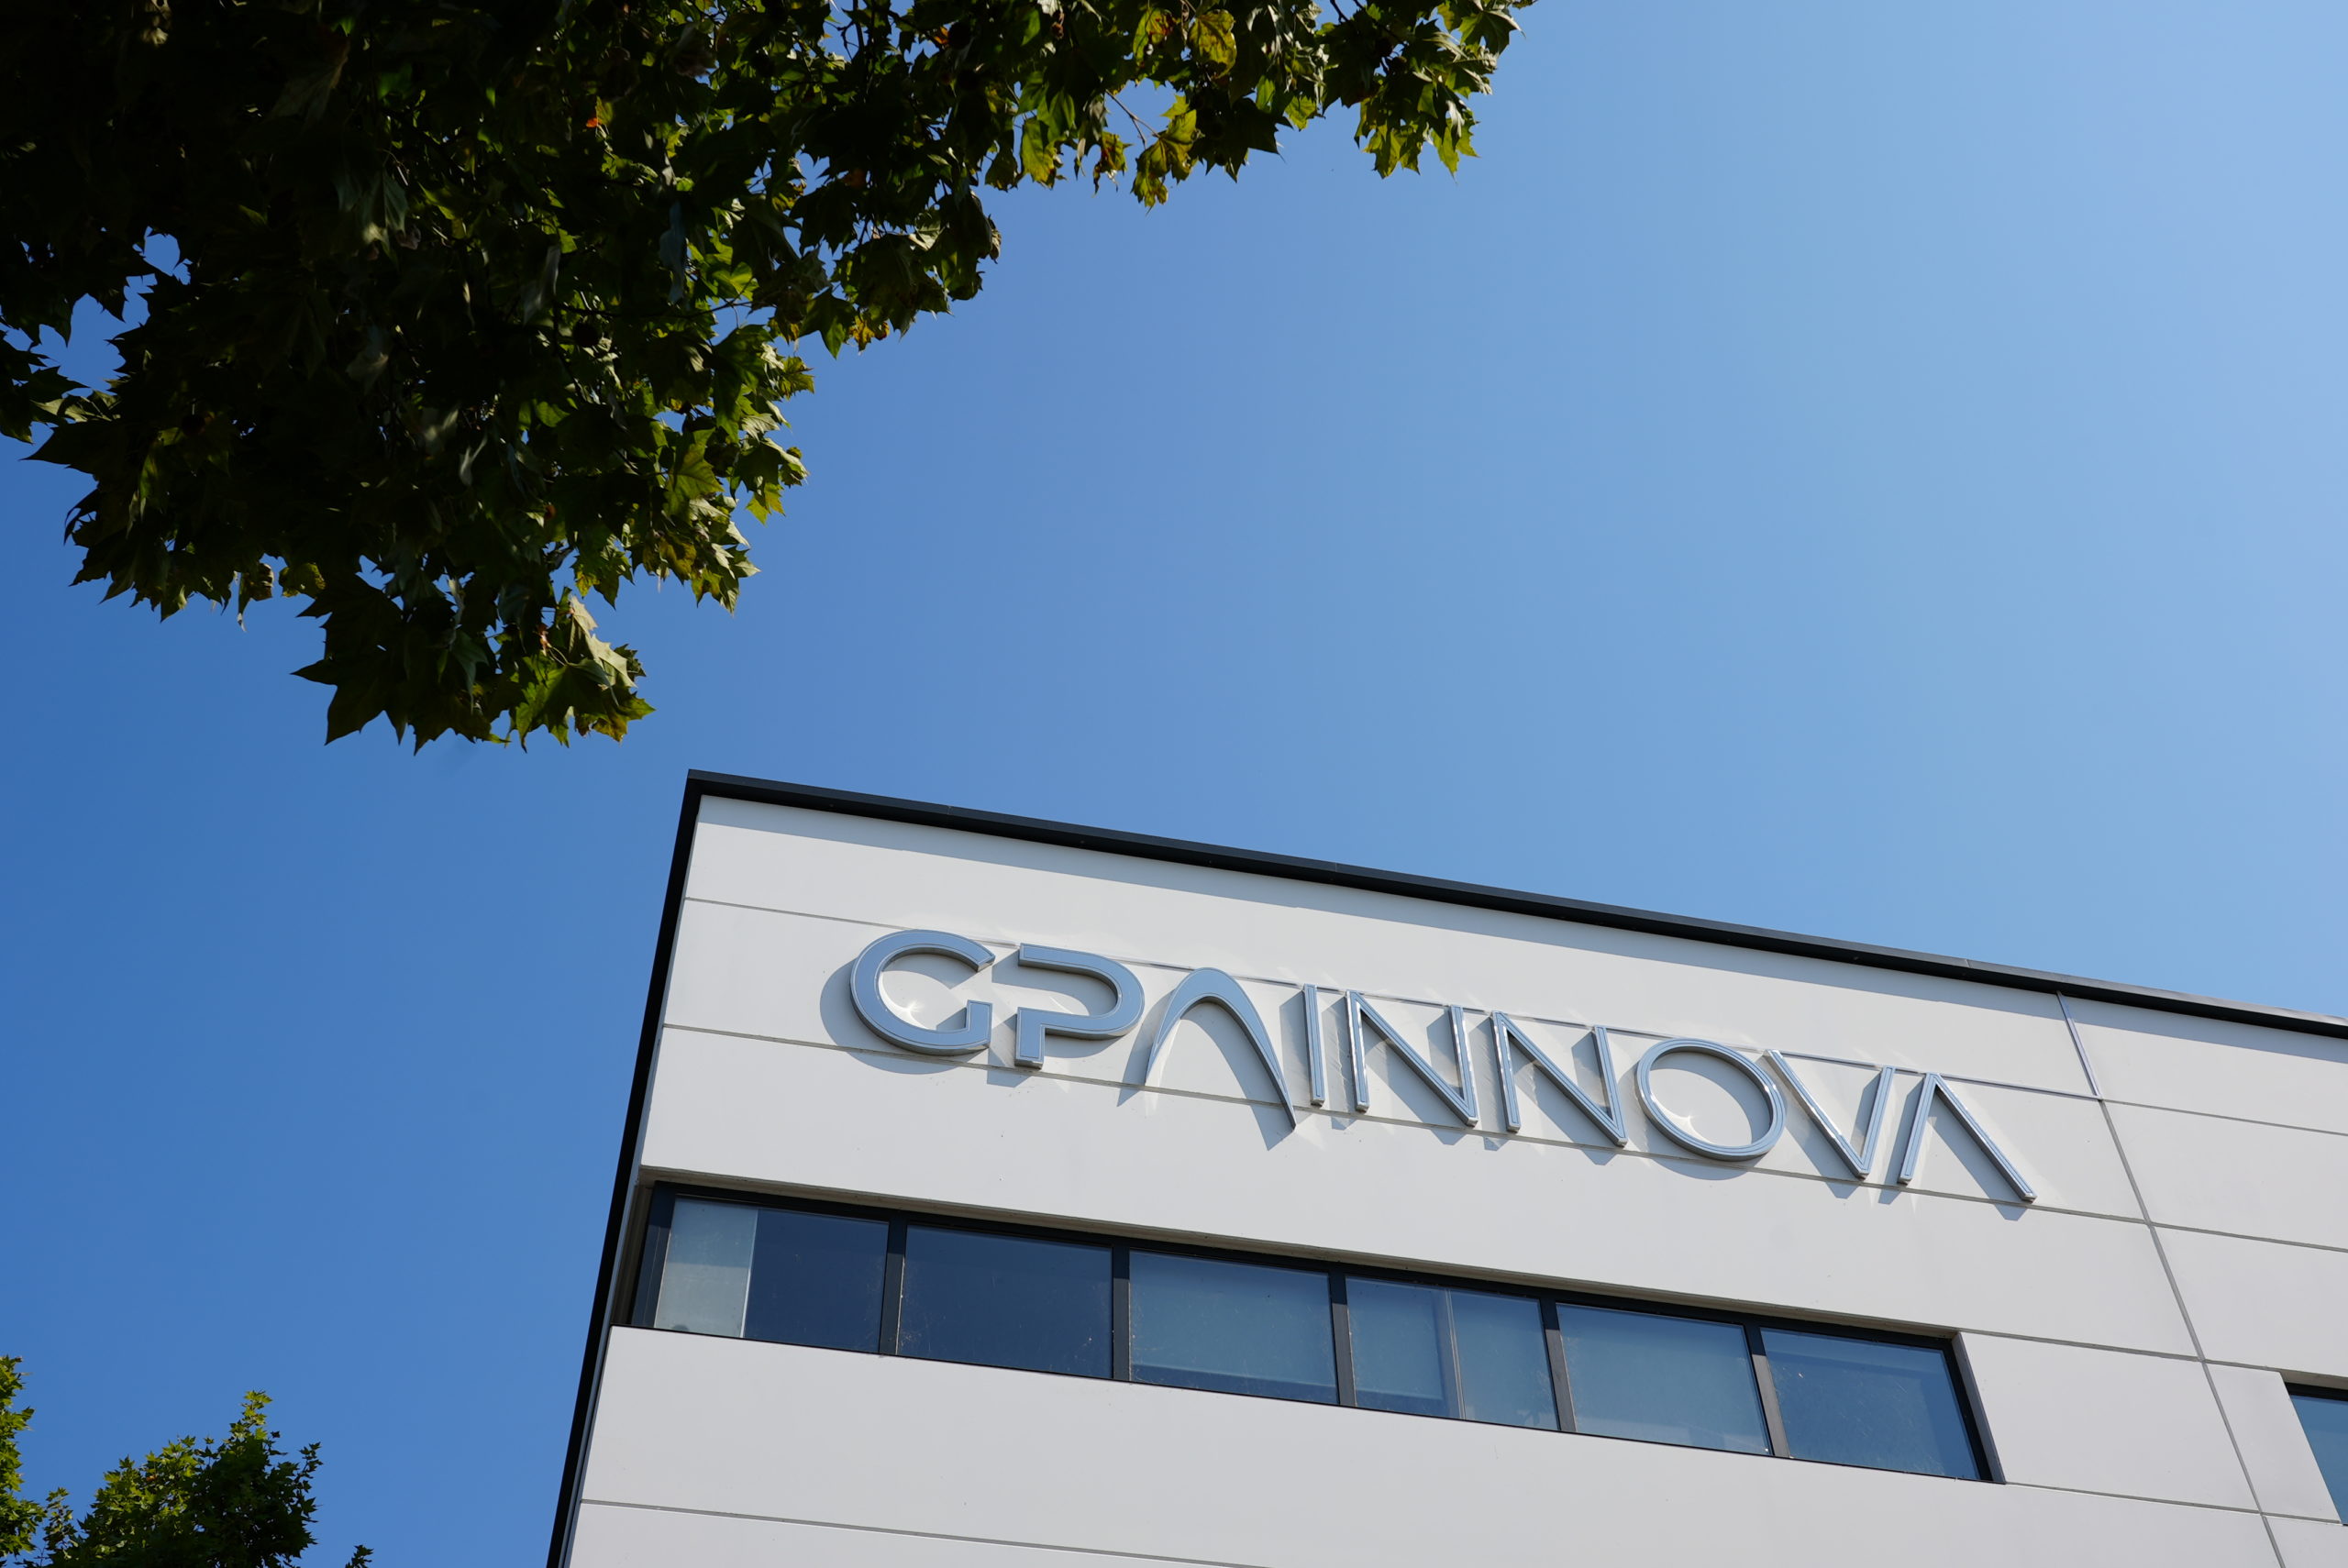 GPAINNOVA és la sisena empresa catalana que més creix, segons Financial Times